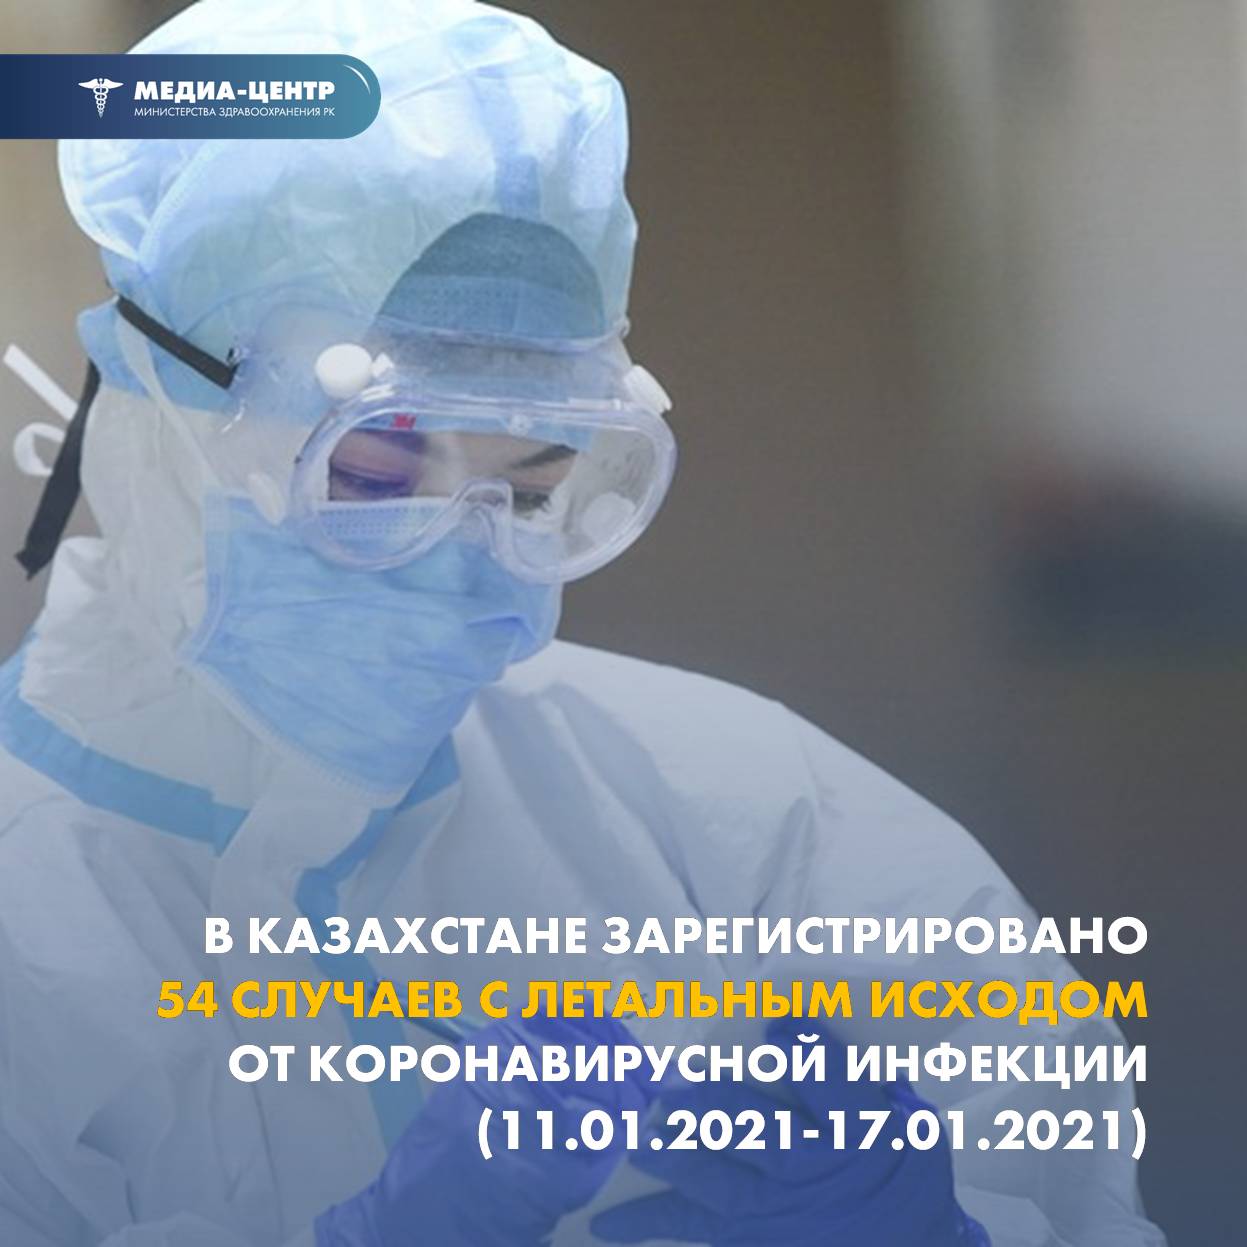 В Казахстане зарегистрировано 54 случая с летальным исходом от коронавирусной инфекции  (11.01.2021 – 17.01.2021)